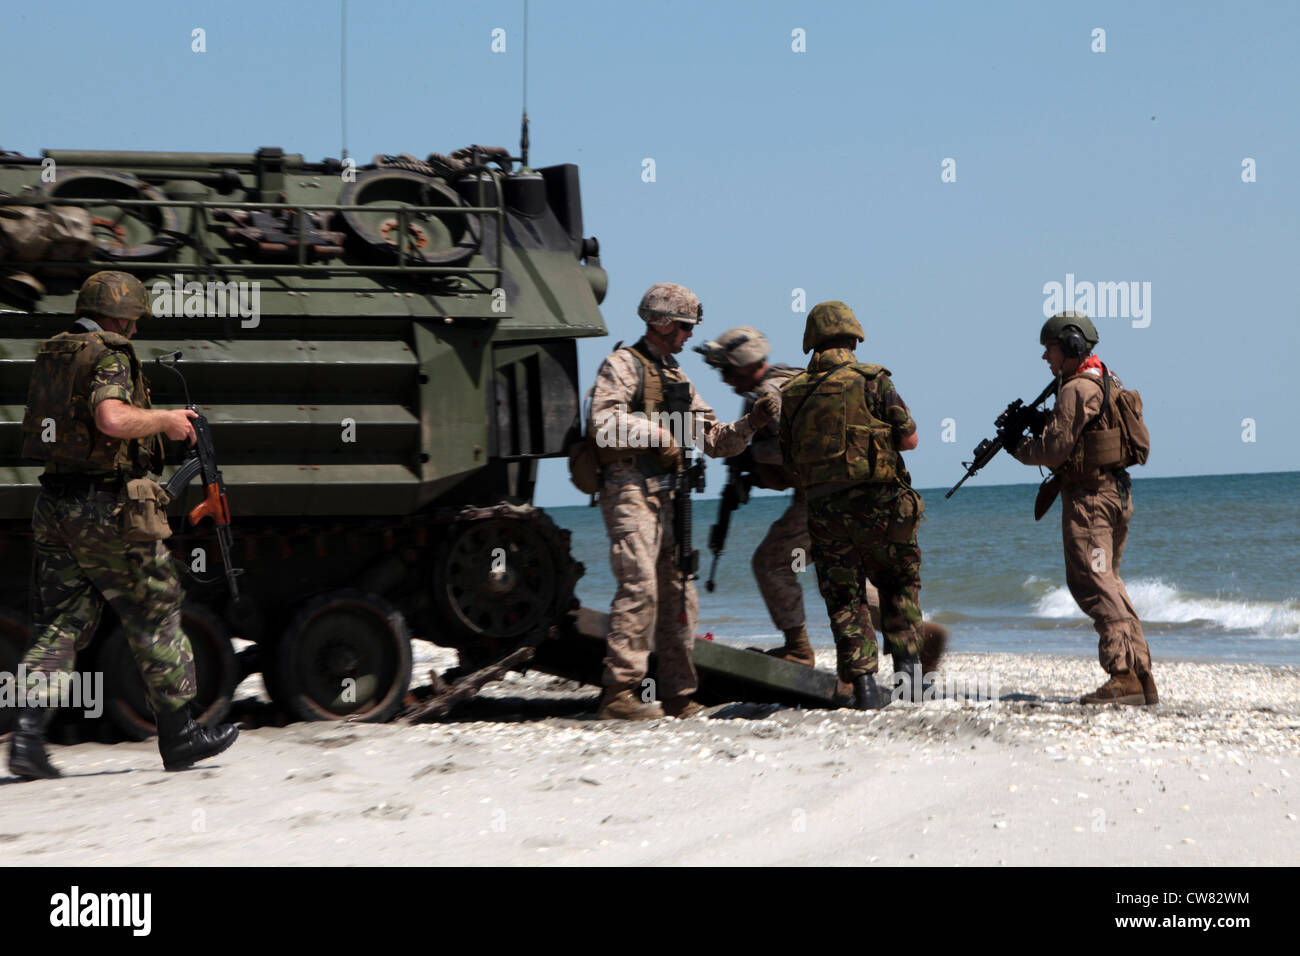 Les Marines américaines avec la Force opérationnelle de coopération en matière de sécurité, la Station de partenariat Afrique 2012 aident les Marines roumaines du 307e Bataillon d'infanterie navale à charger dans un véhicule d'assaut amphibie, lors d'un assaut sur la plage à Capu Midia, Roumanie, le 12 août 2012 l'assaut sur la plage a été 12. Banque D'Images